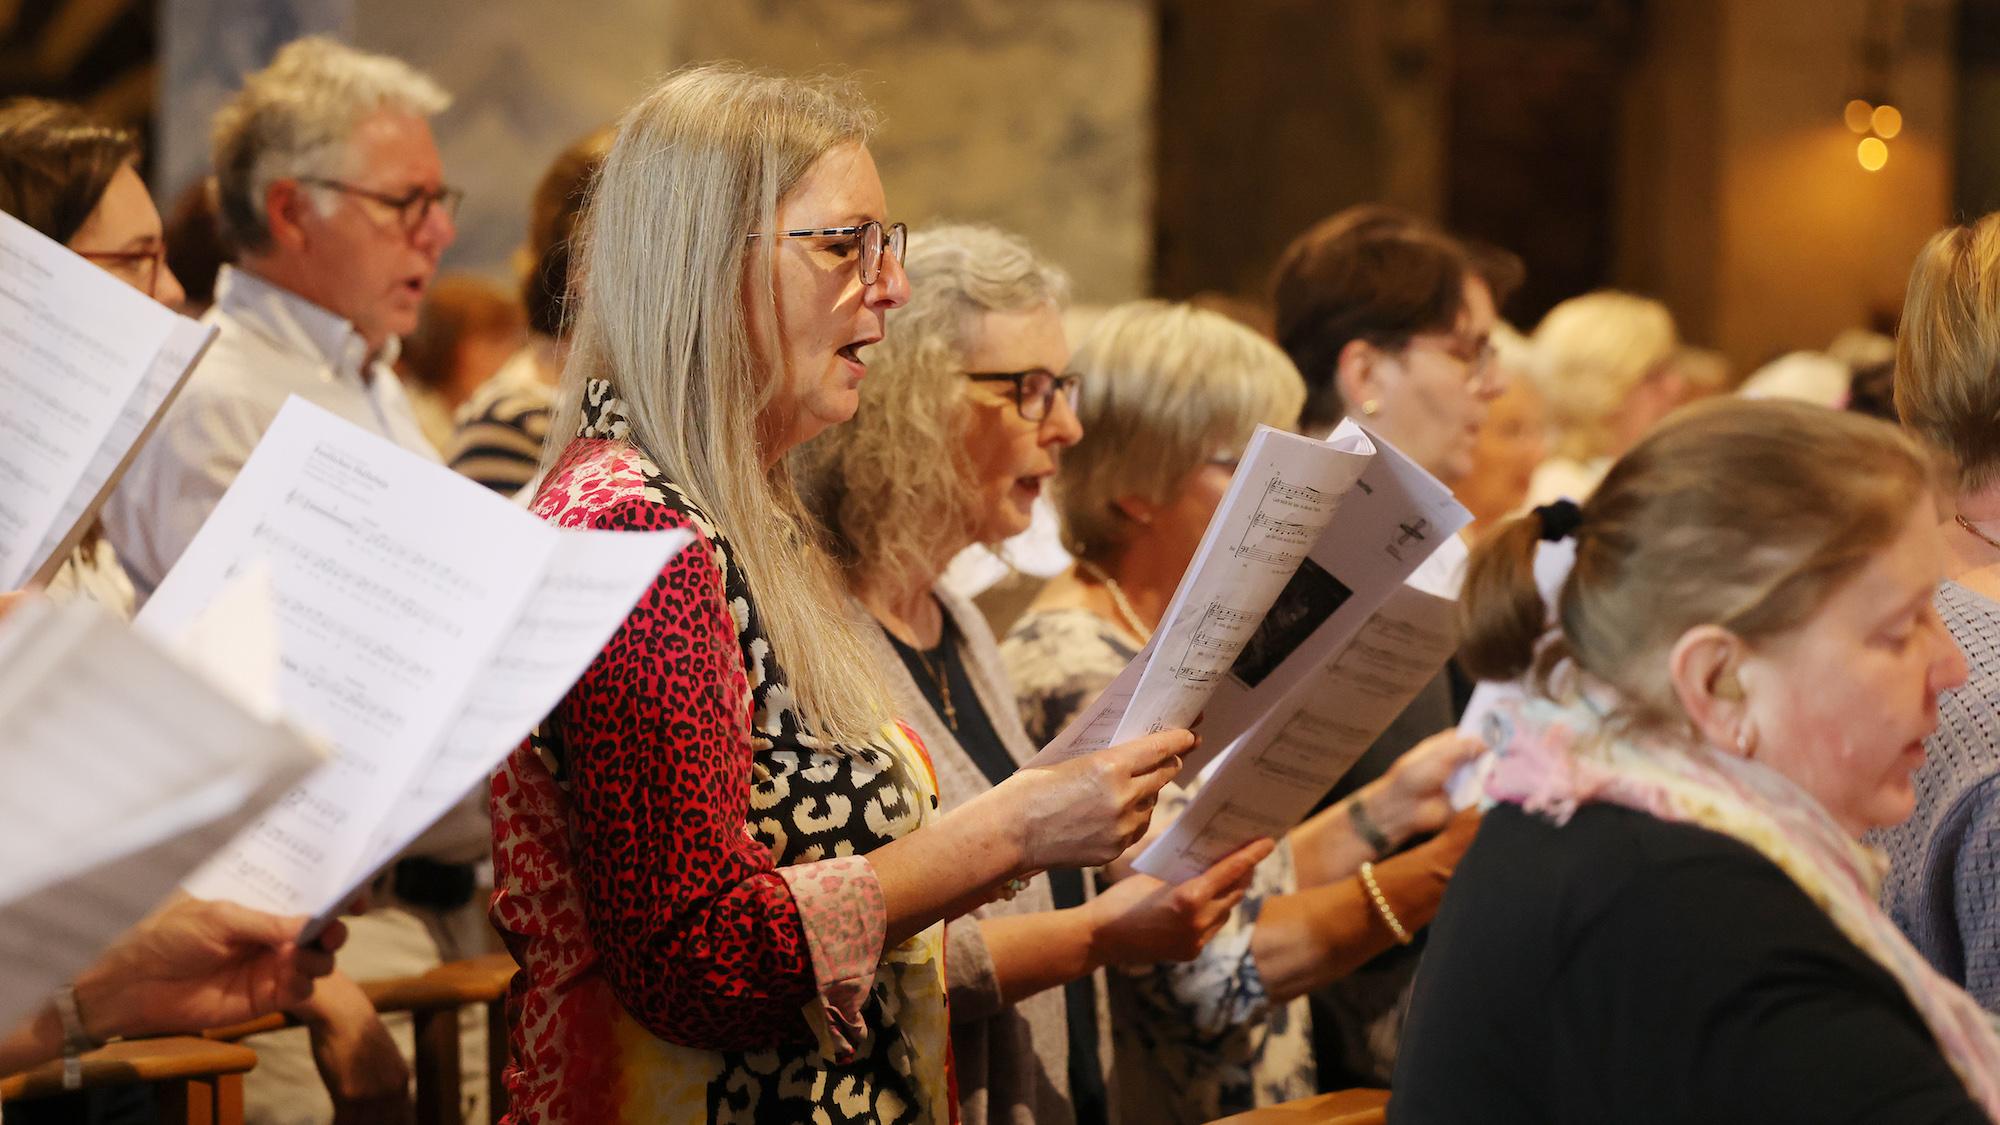 Rund 10 000 Sängerinnen und Sänger engagieren sich im Bistum Aachen in Chören und Chorgemeinschaften. Knapp 900 von ihnen kamen in Aachen zum diözesanen Kirchenchortag zusammen, um Neues kennenzulernen, sich von der Gemeinschaft inspirieren zu lassen – und natürlich, um gemeinsam zu singen.